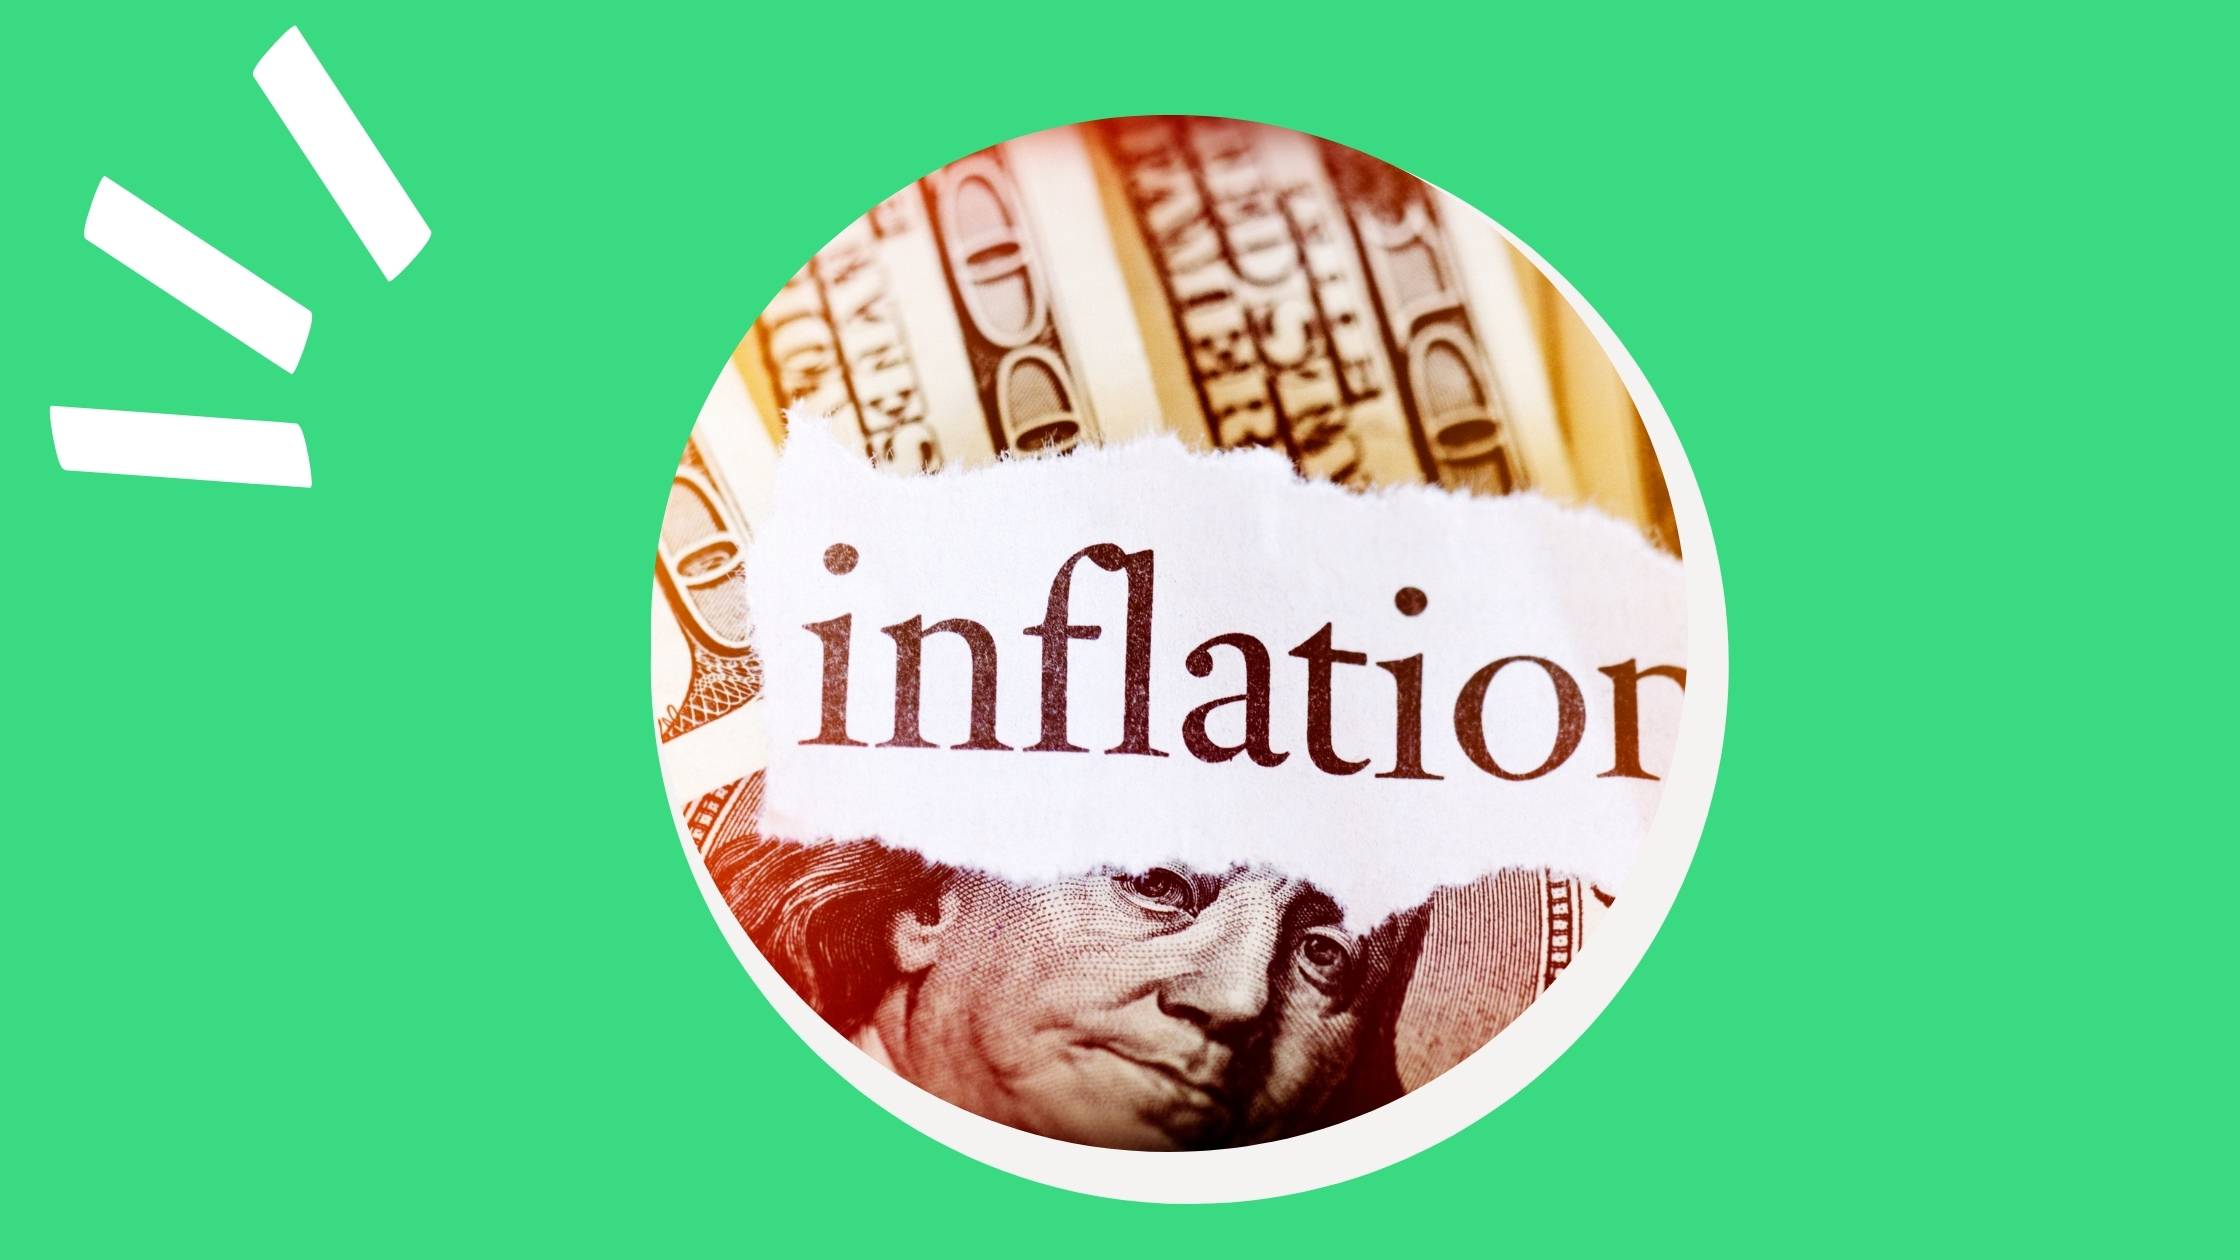 investimento em renda fixa acima da inflação